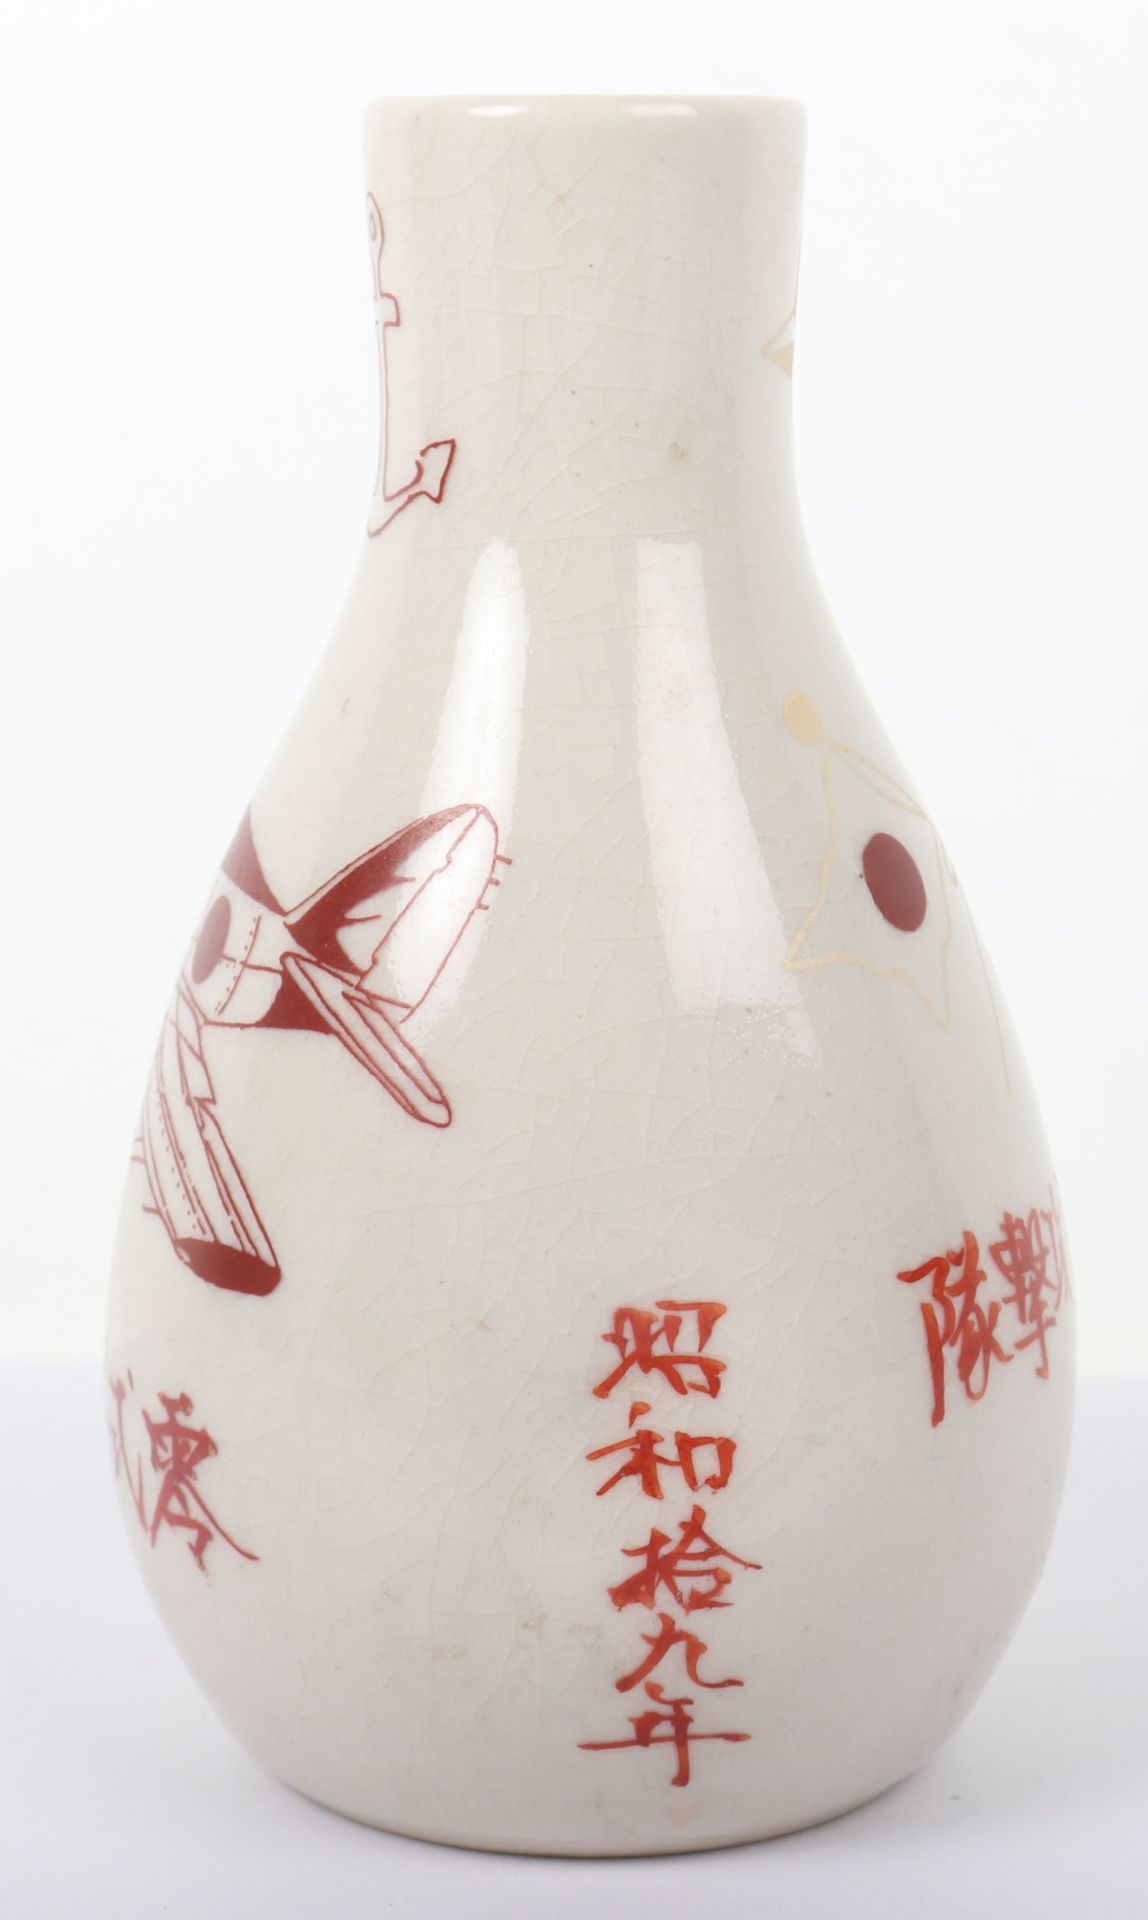 WW2 Japanese Kamikaze Pilots Sake Bottle - Image 4 of 5